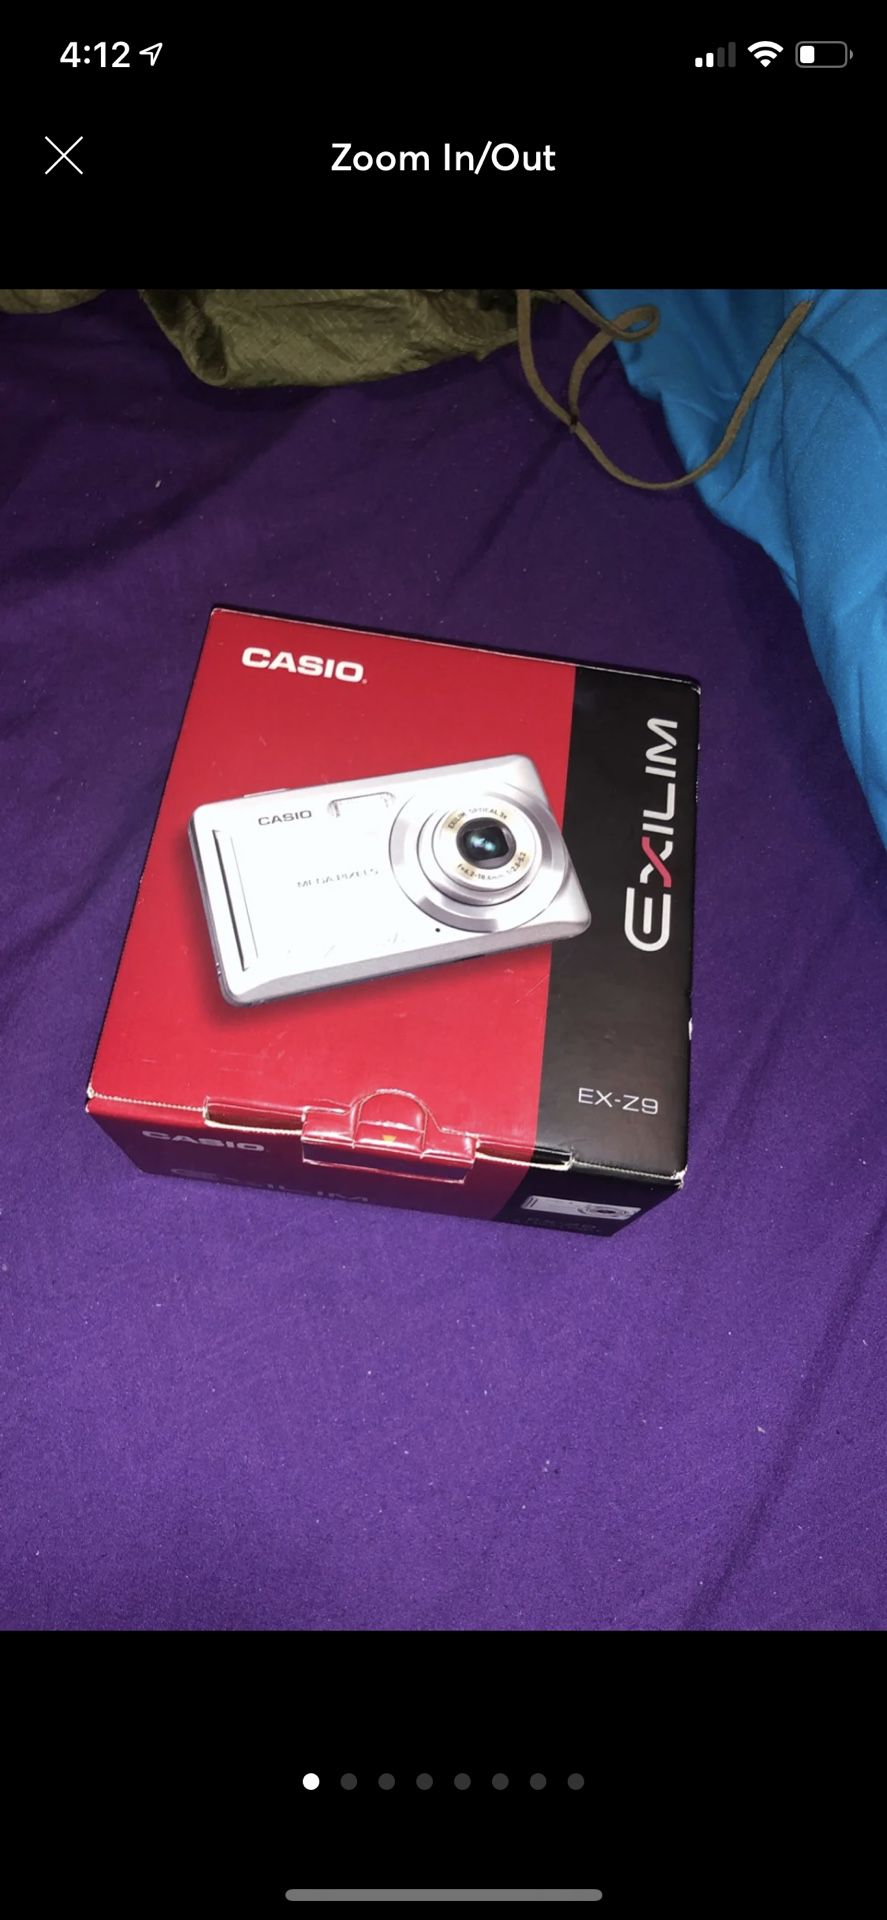 Casio Digital Camera